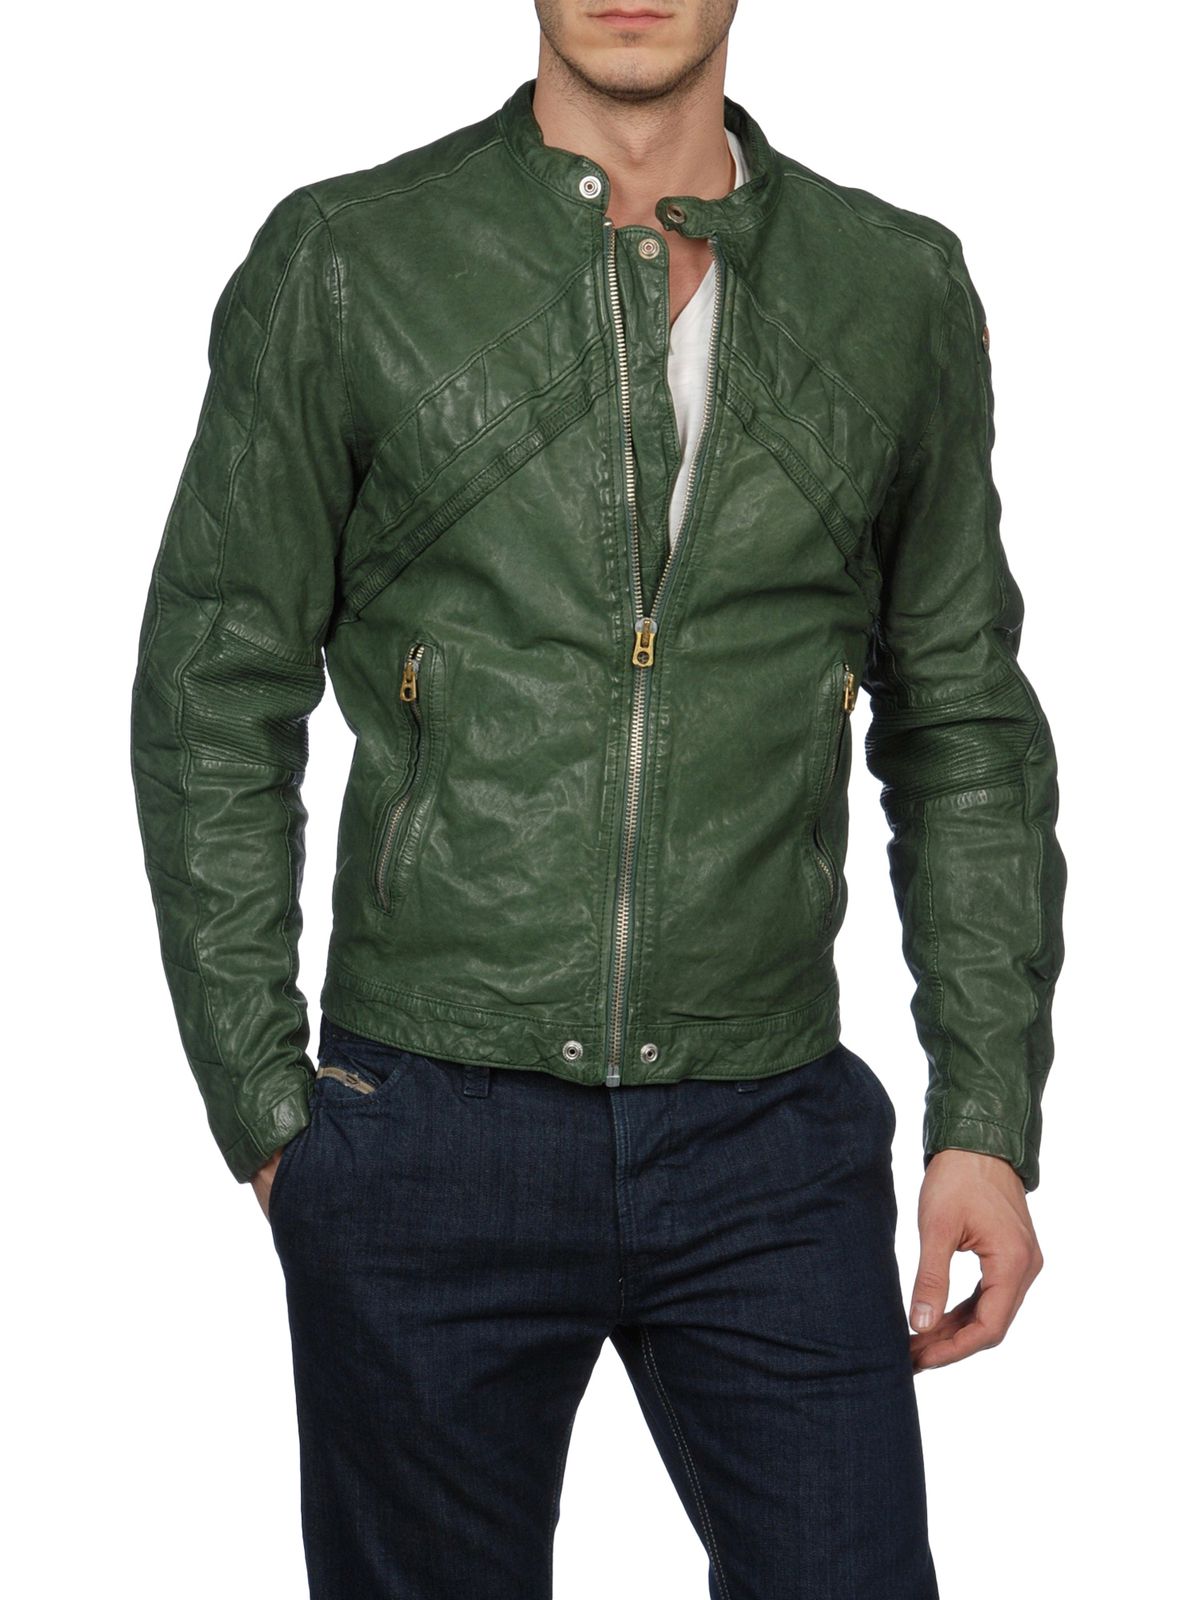 Зеленая кожаная куртка мужская